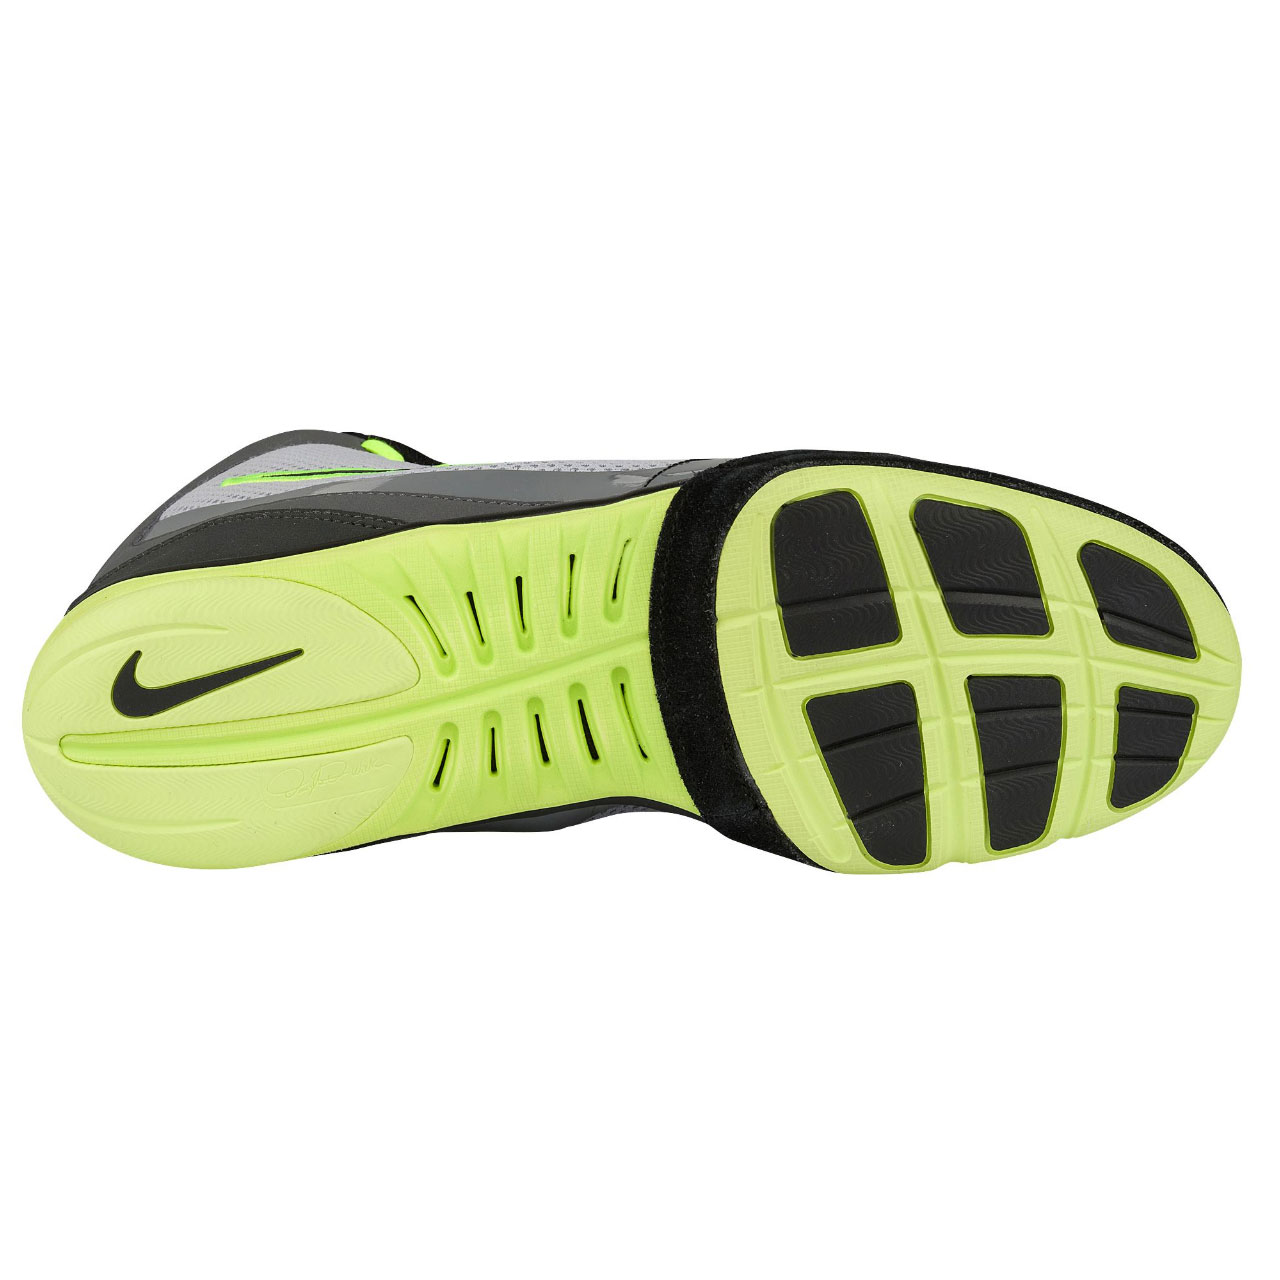  Nike Freek 316403-007 